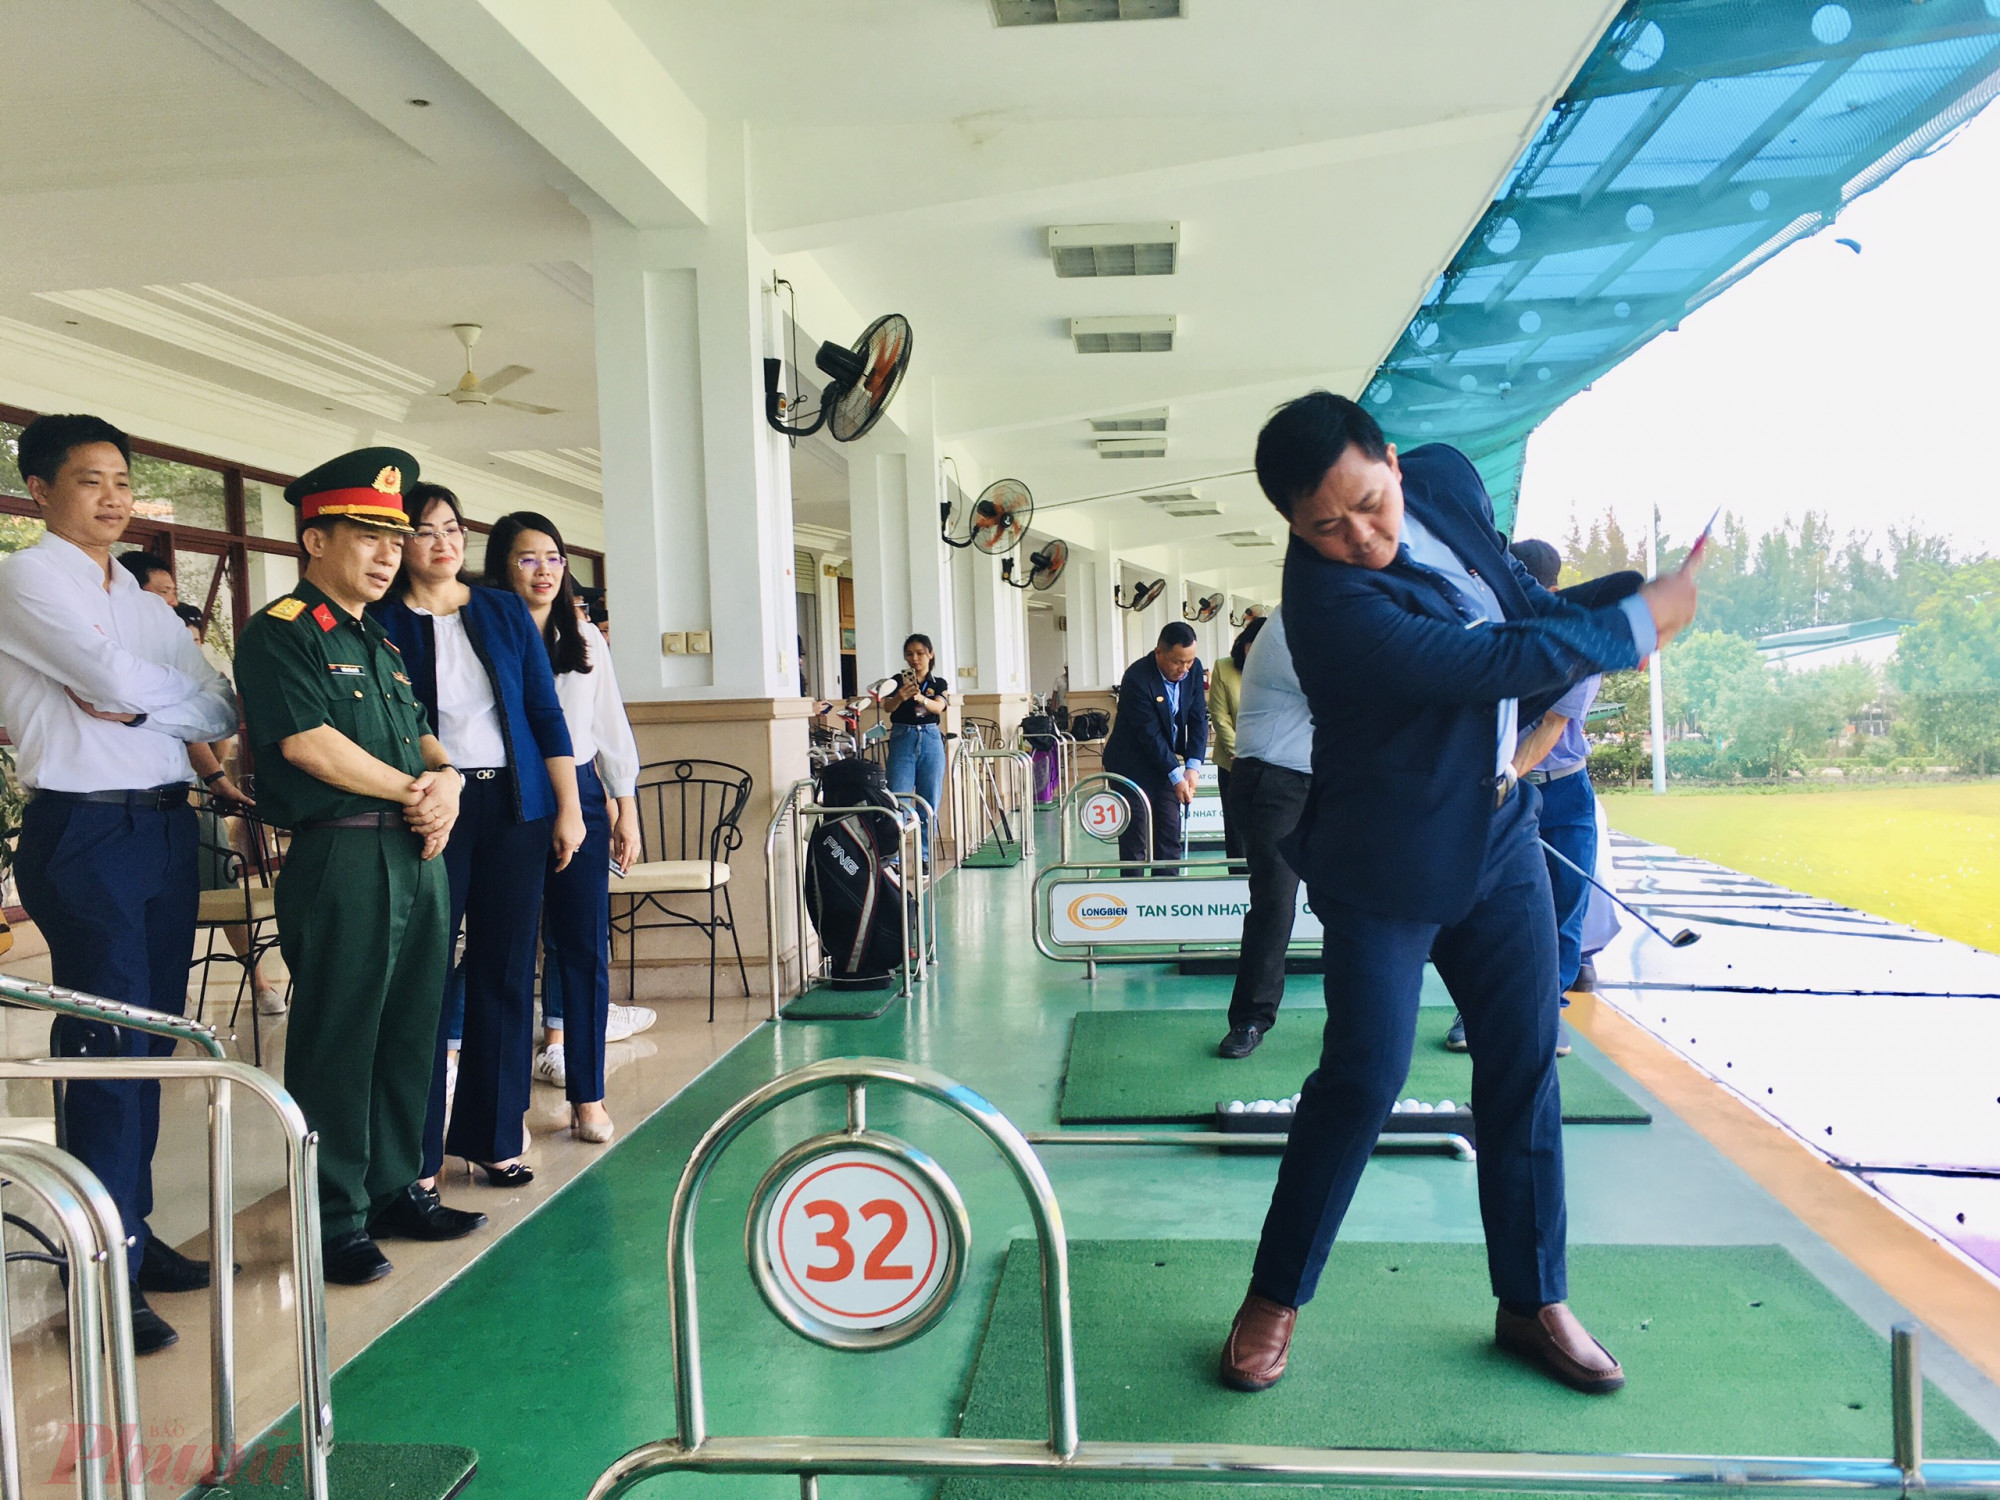 Đoàn khách trải nghiệm sân gofl Tân Sơn Nhất trong chương trình tour du lịch khám phá sản phẩm quận Gò Vấp năm 2022. - Ảnh: Quốc Thái